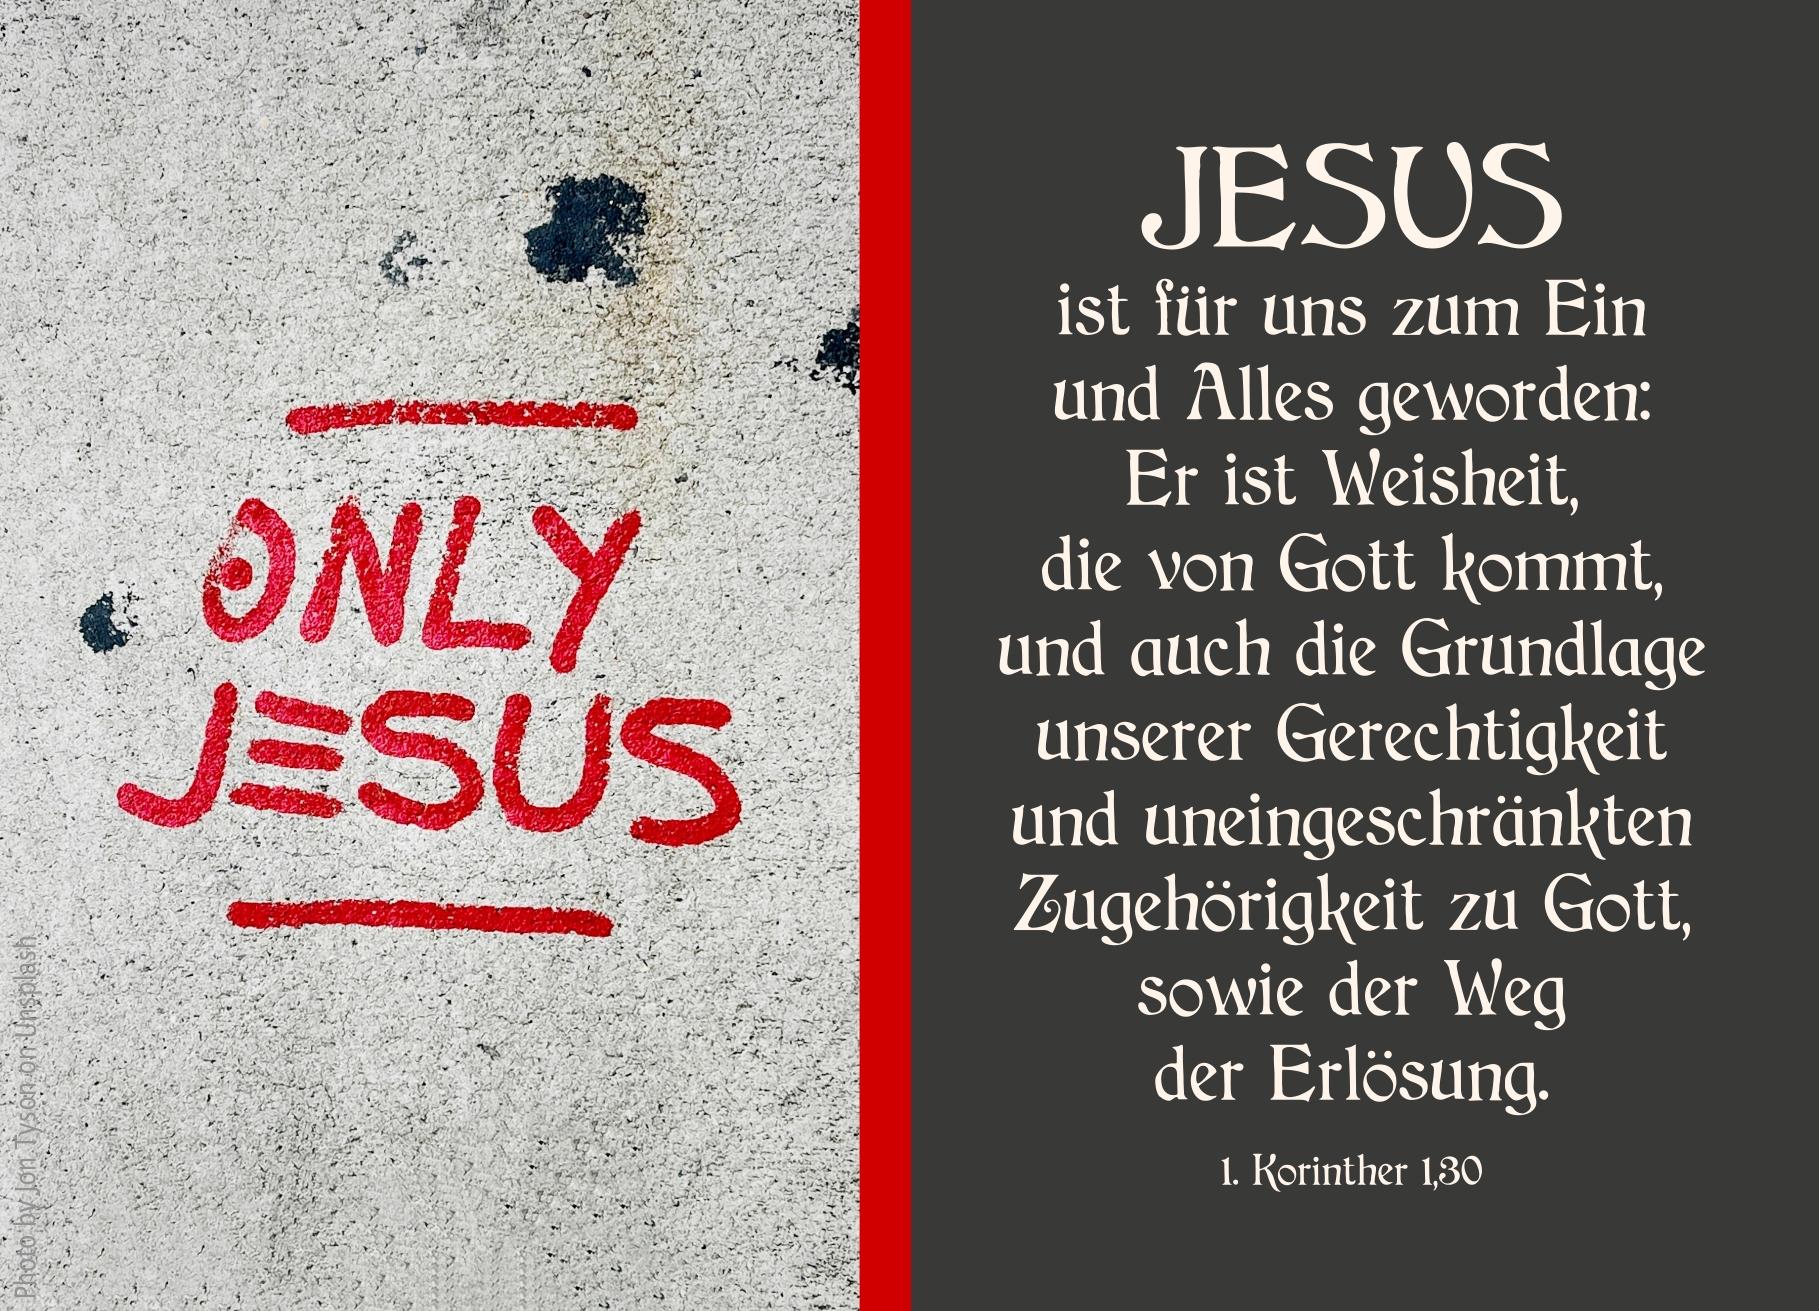 alt="schriftzug_only_jesus_erwartet_bibehoerbuch_botschaft_vom_kreuz"